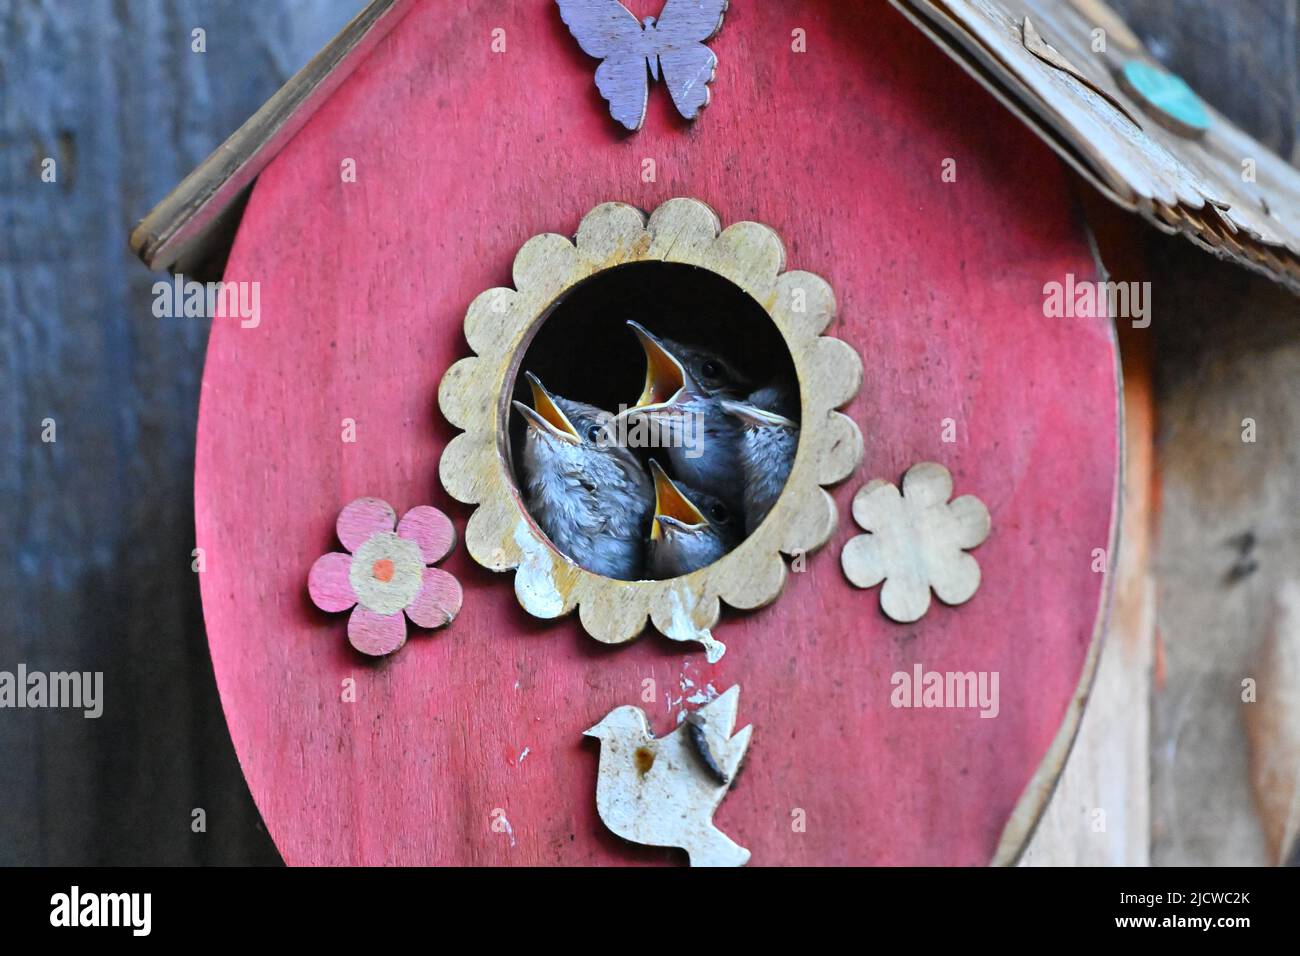 The house wren, Troglodytes aedon family in Birdhouse Stock Photo